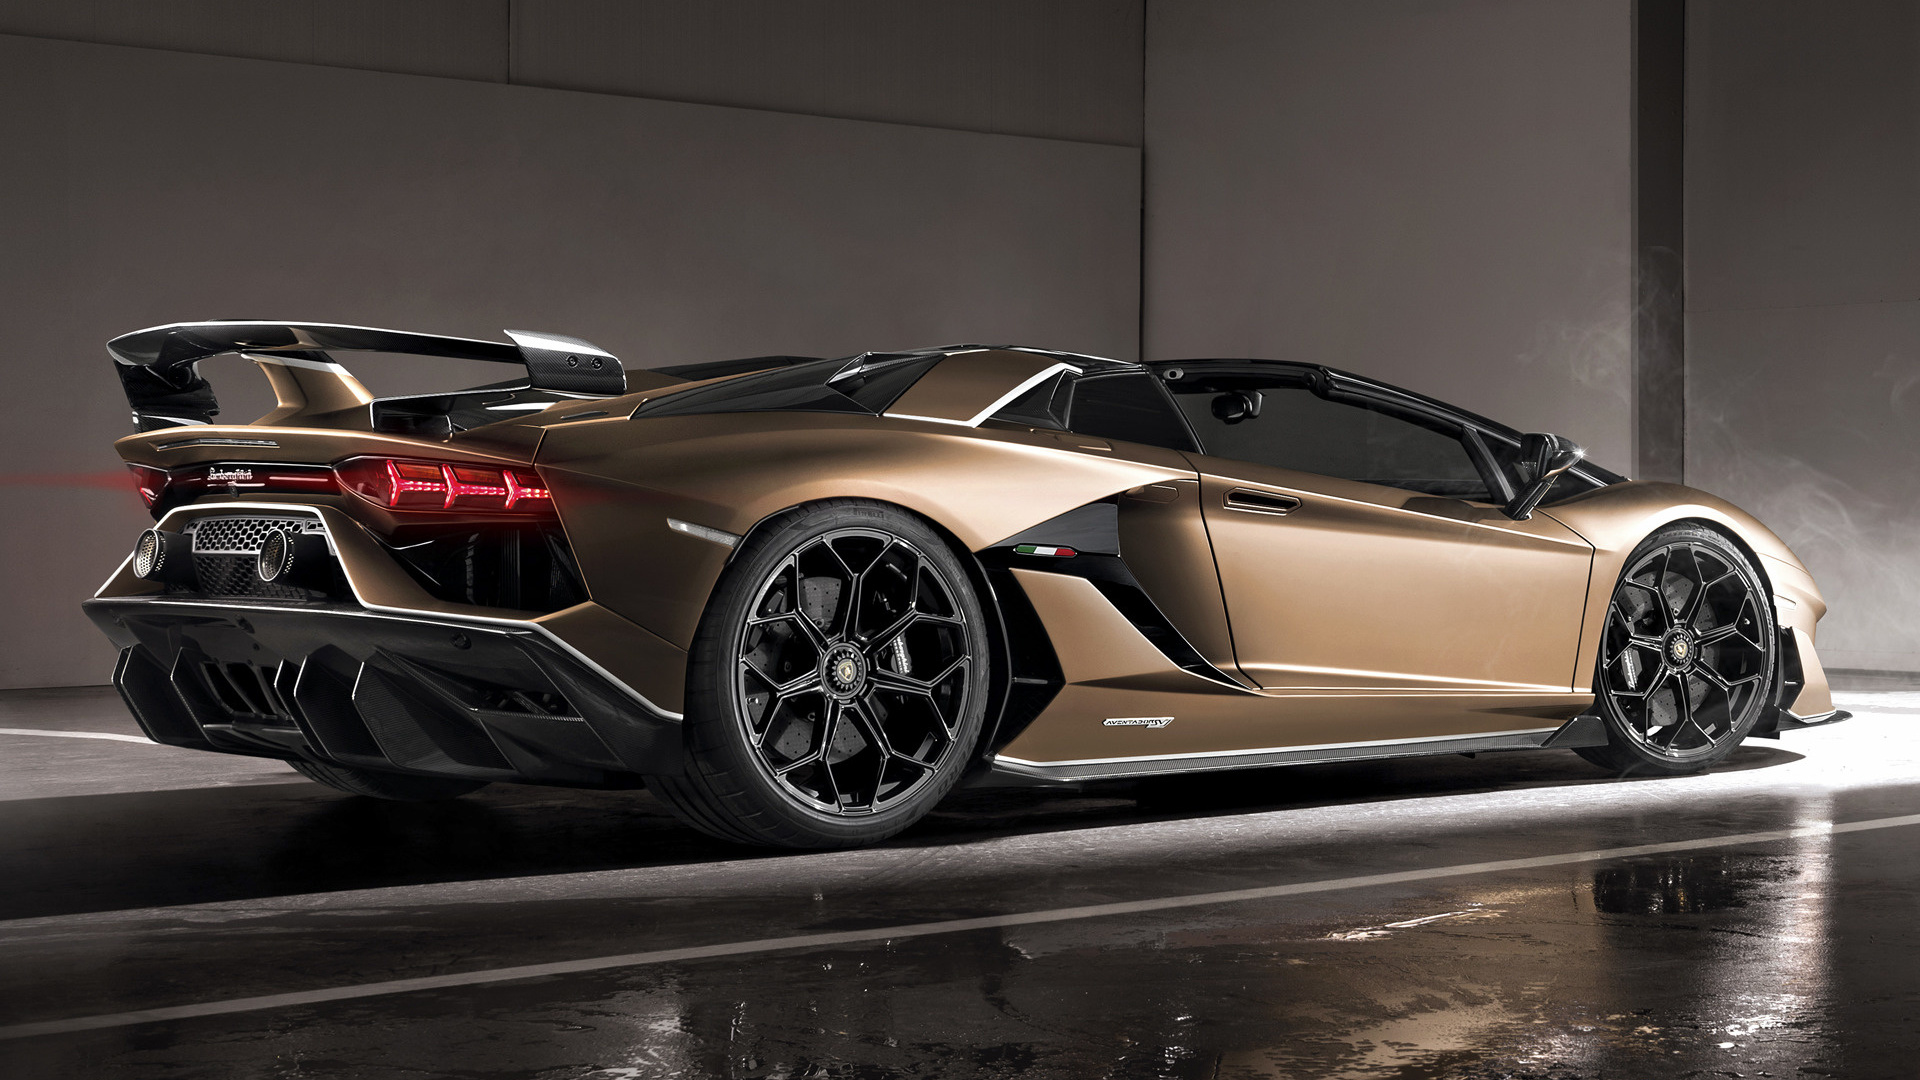 2019 Lamborghini Aventador SVJ Roadster - Wallpapers and ...